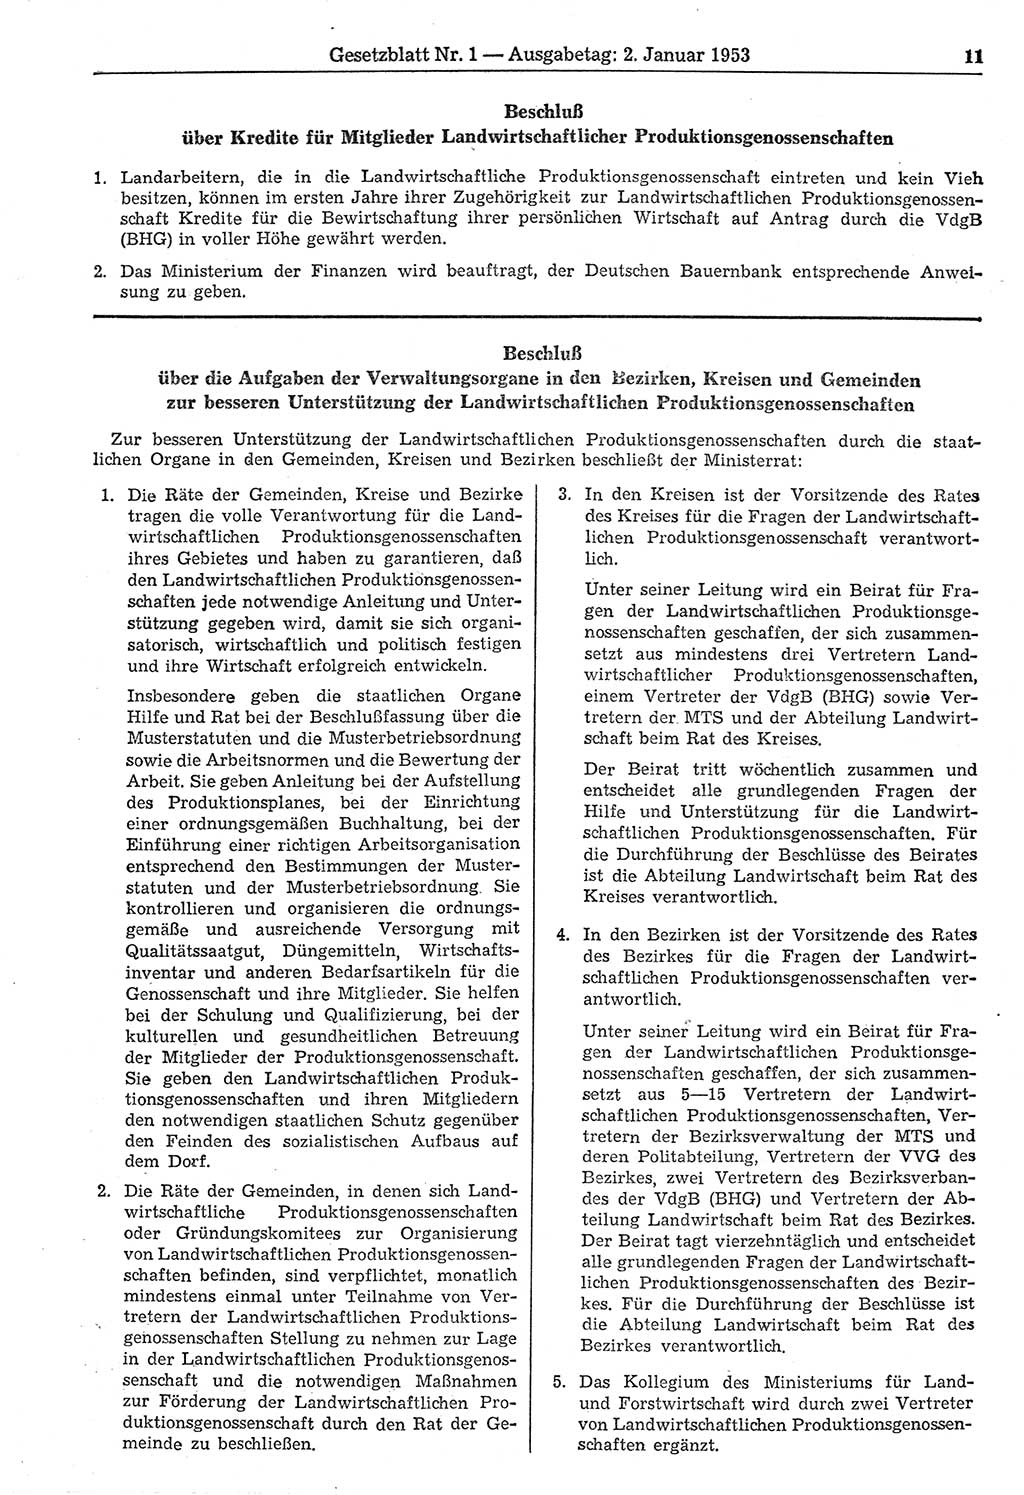 Gesetzblatt (GBl.) der Deutschen Demokratischen Republik (DDR) 1953, Seite 11 (GBl. DDR 1953, S. 11)